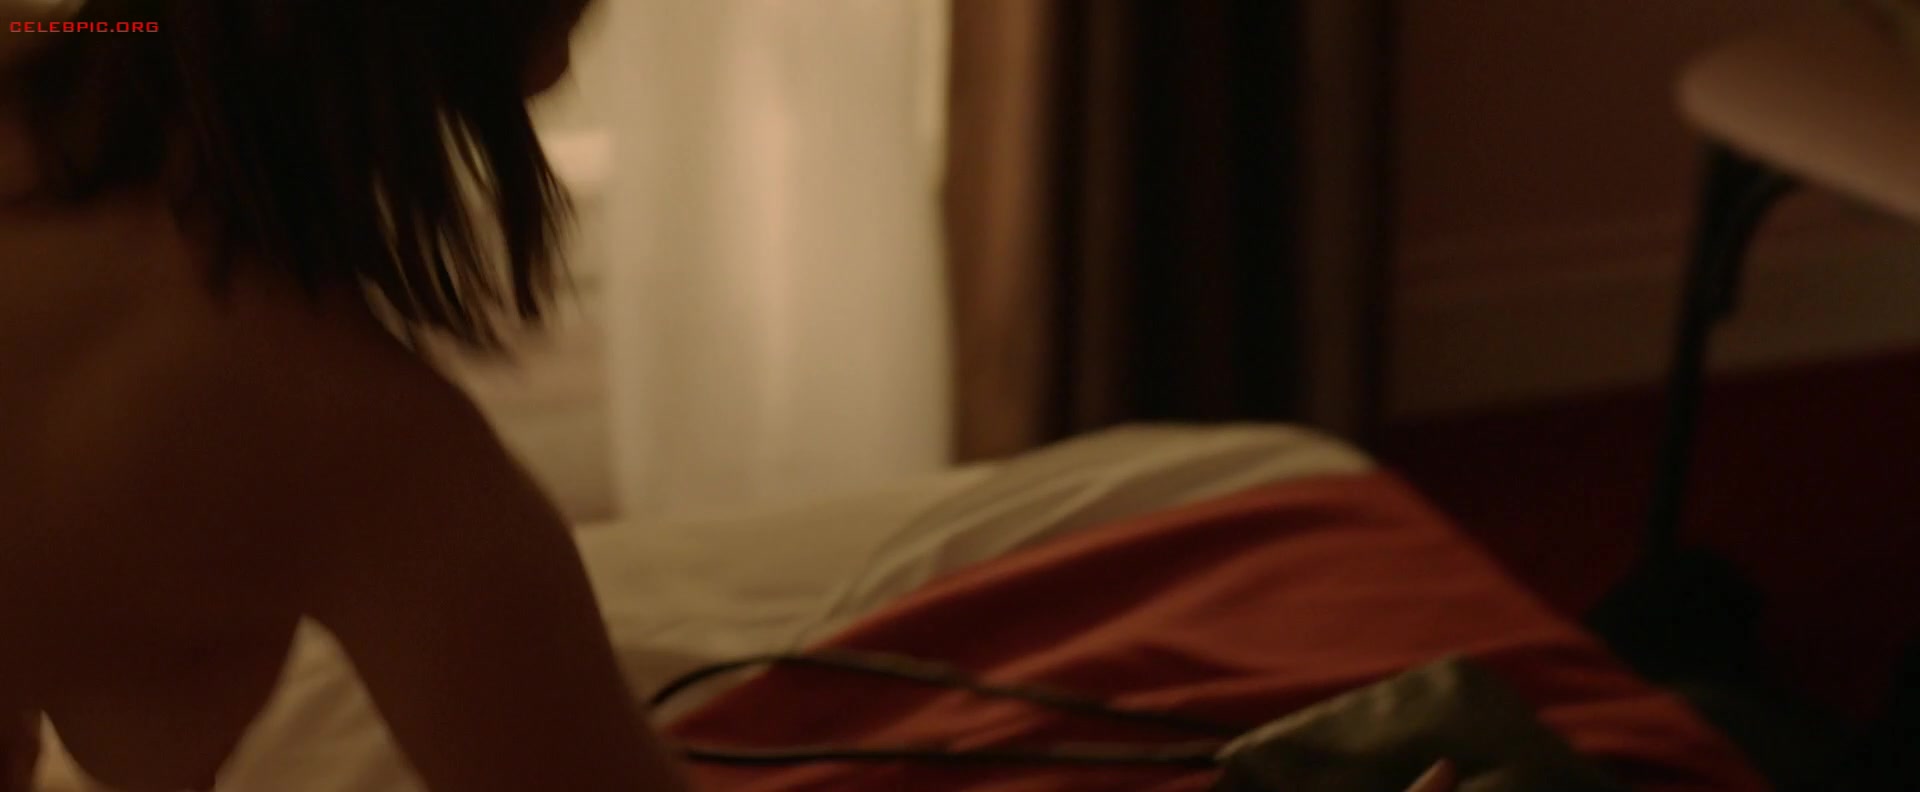 Gemma Arterton - The Escape 1080p (1) 1601.jpg